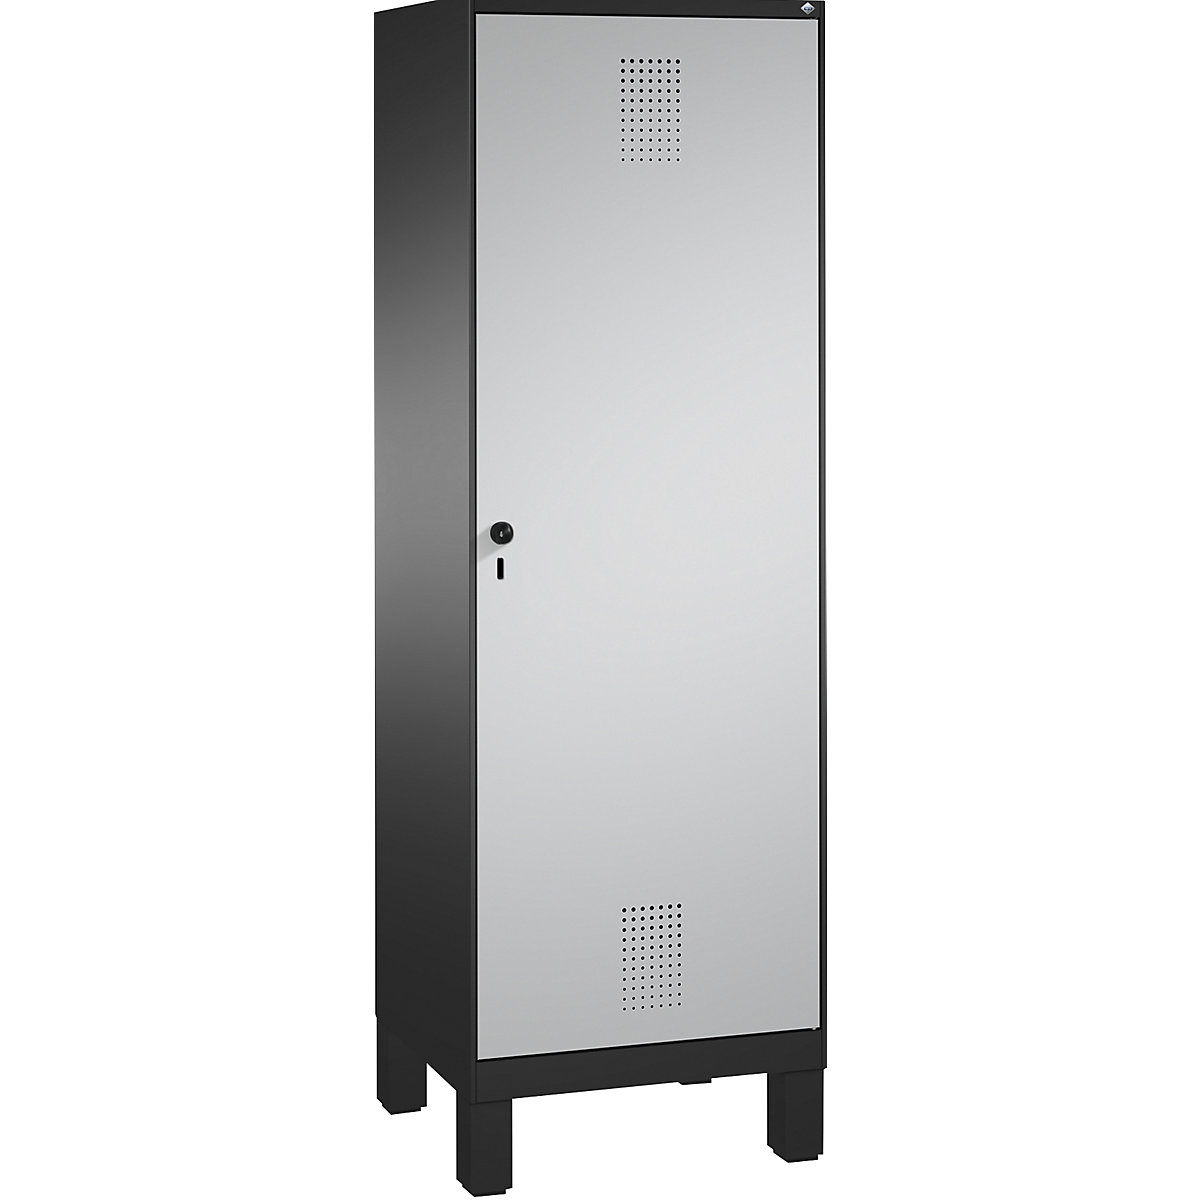 EVOLO Garderobenschrank, Tür über 2 Abteile, mit Füßen C+P, 2 Abteile, 1 Tür, Abteilbreite 300 mm, schwarzgrau / weißaluminium-15